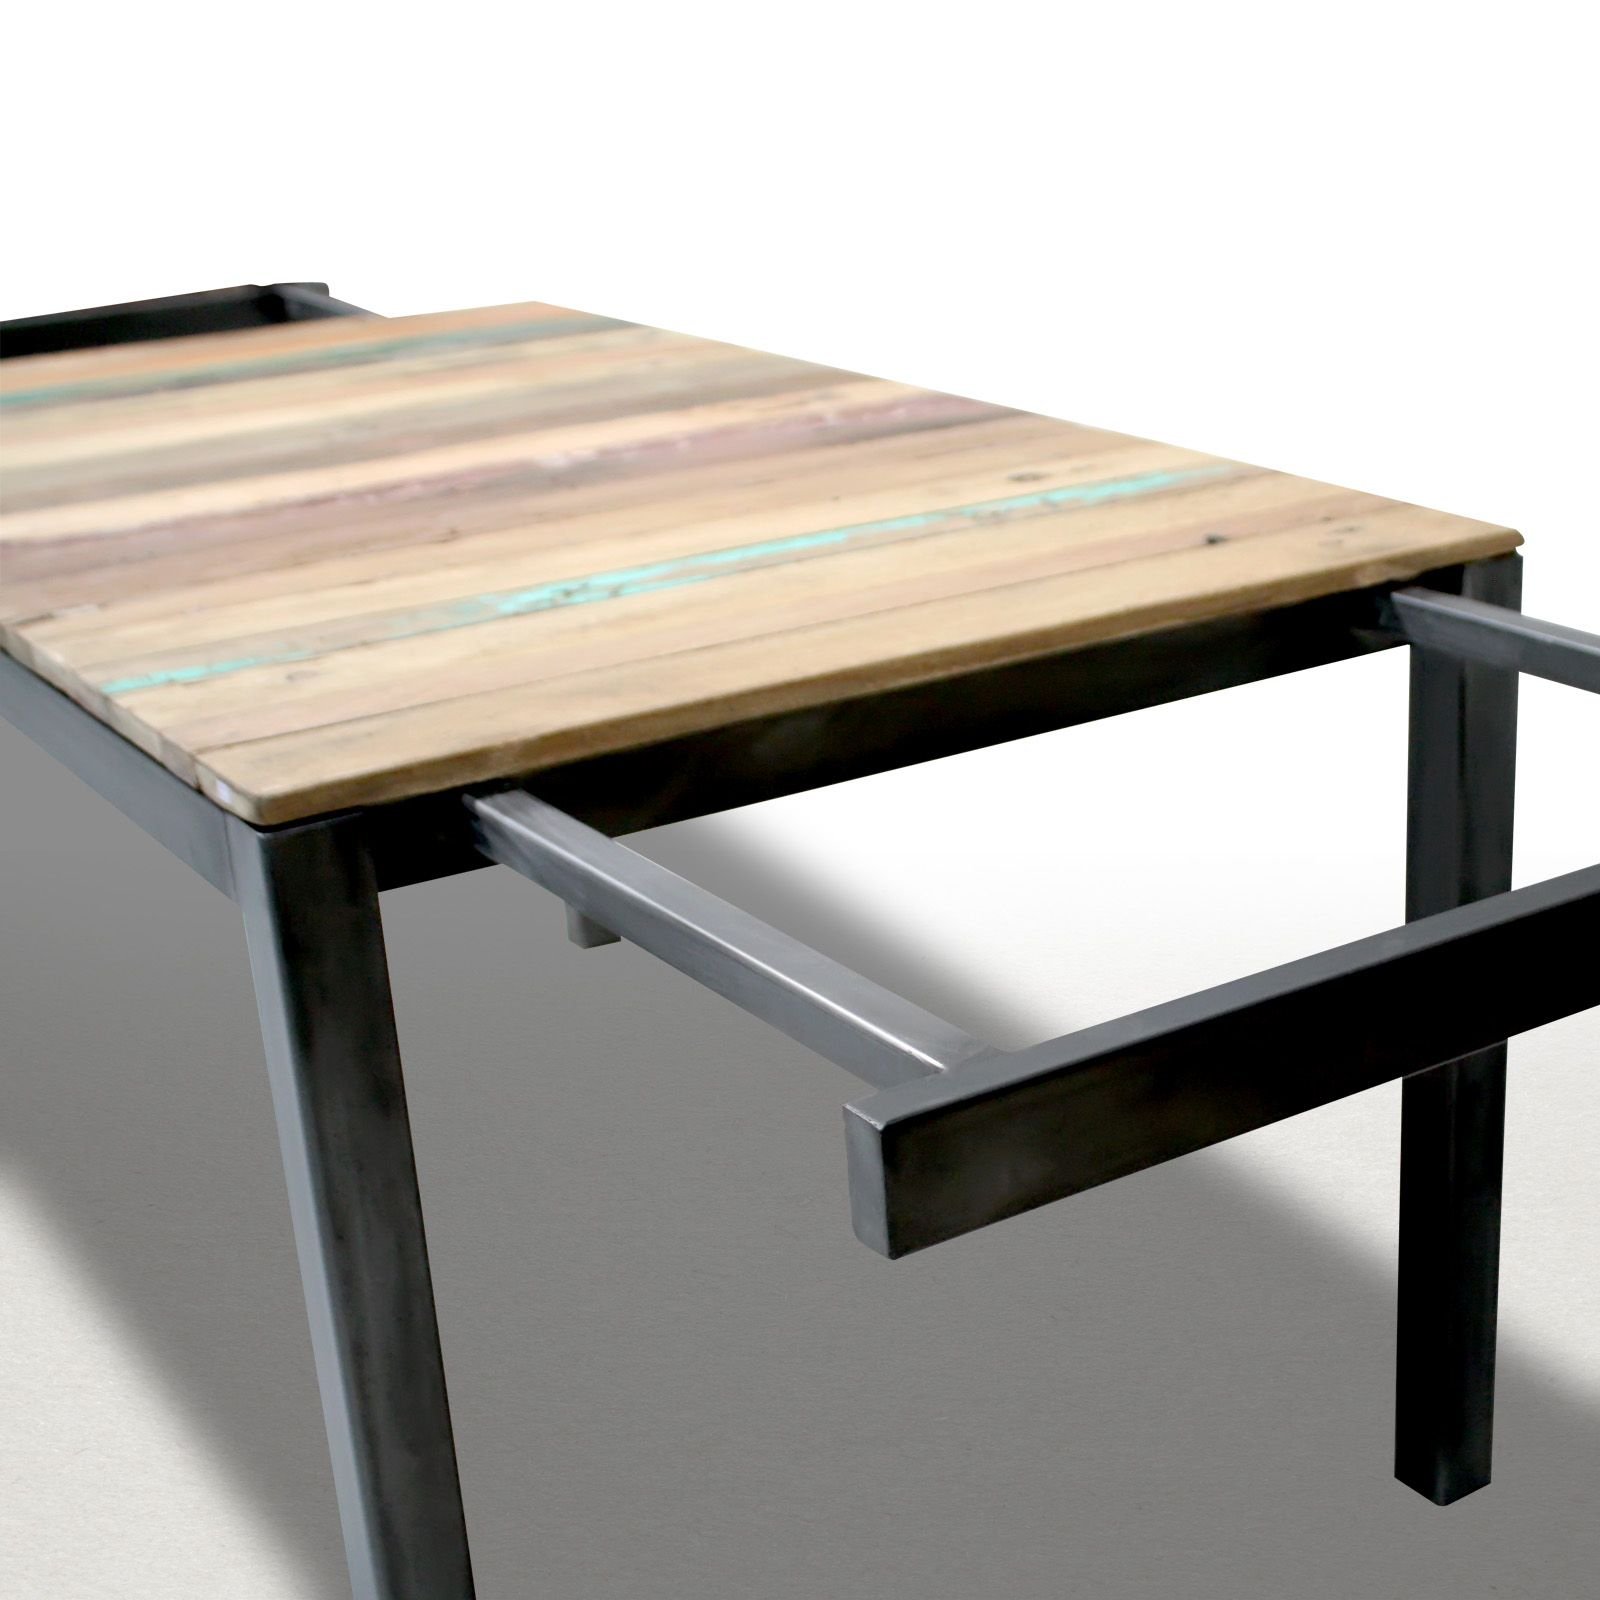 Стол обеденный металл. Unico Metall откидной стол. Откидной стол лофт. Раскладной стол из металла. Выдвижной стол в стиле лофт.